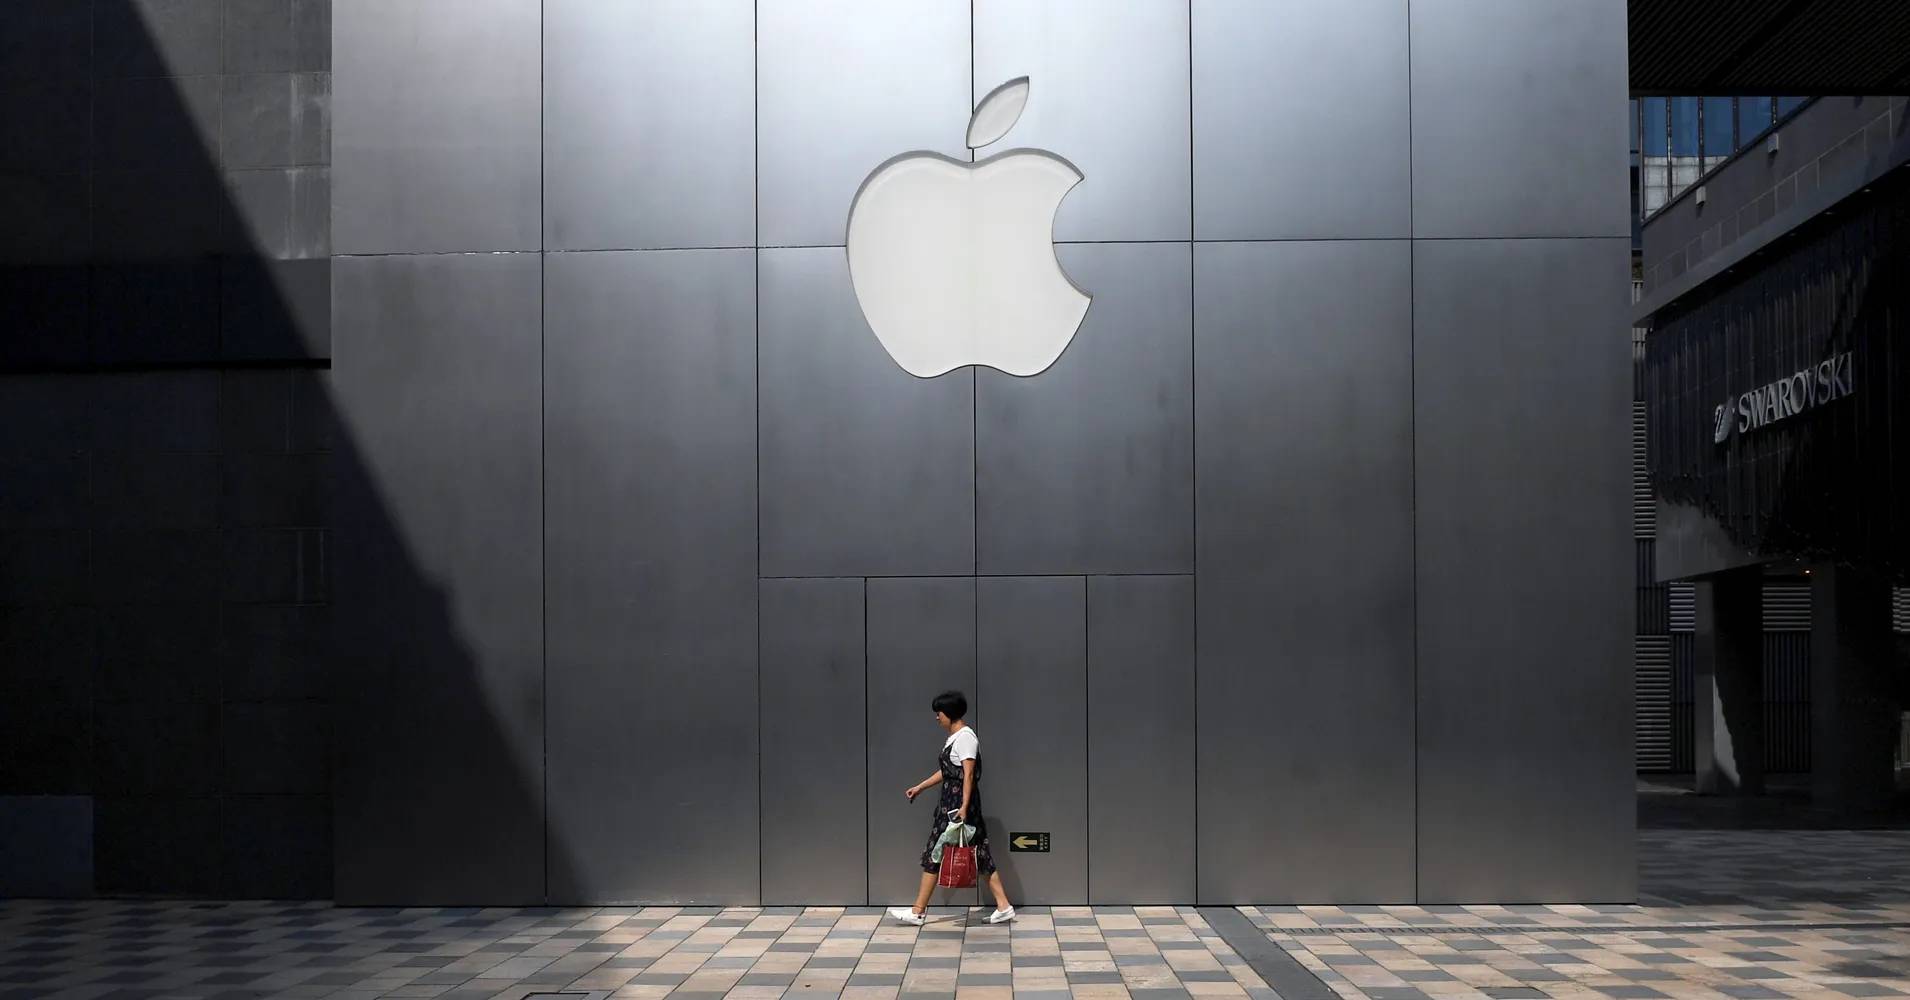 Business AppleChina TA1 825760228 - Apple annuncia l’interruzione della produzione di iPod touch / Portfolio di prodotti Ideal Car Future simile a iPhone / Bill Gates infettato con una nuova corona